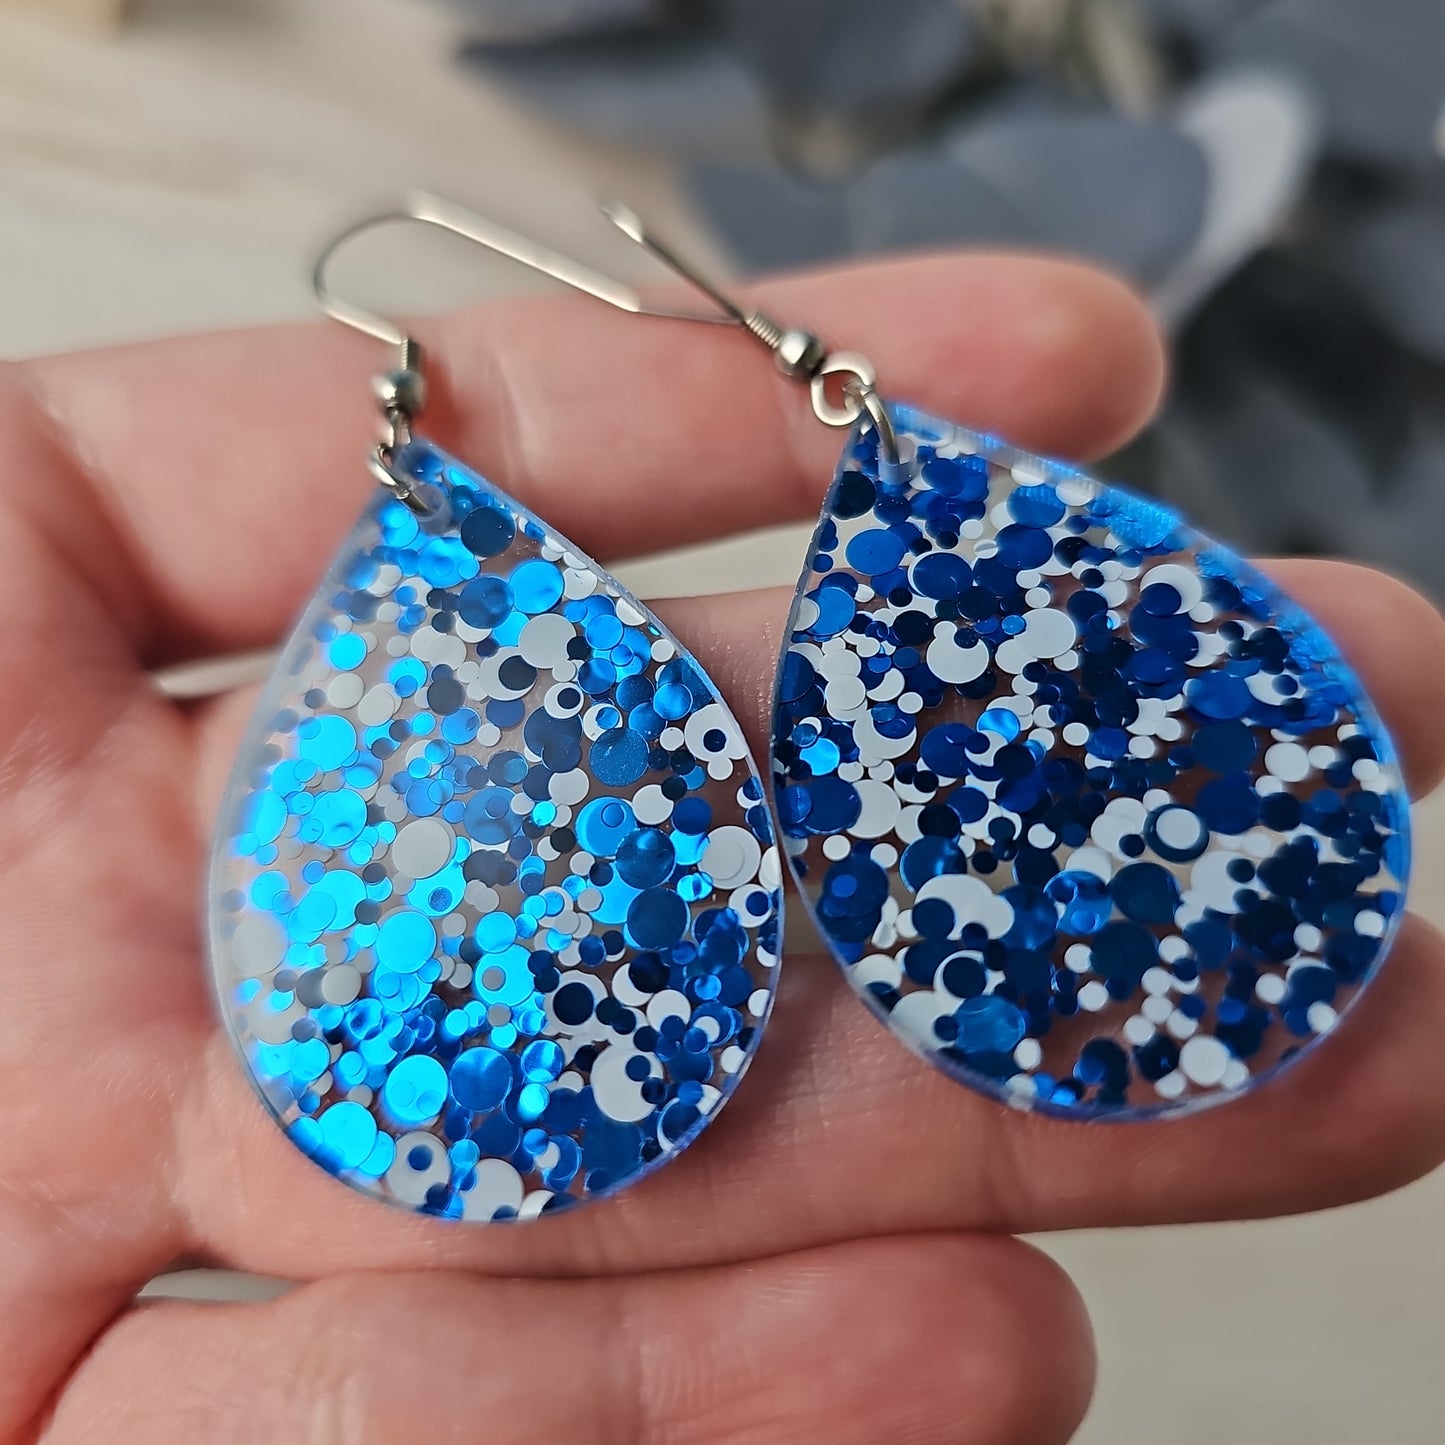 Blue & White Polka Dot Earrings (8 styles)